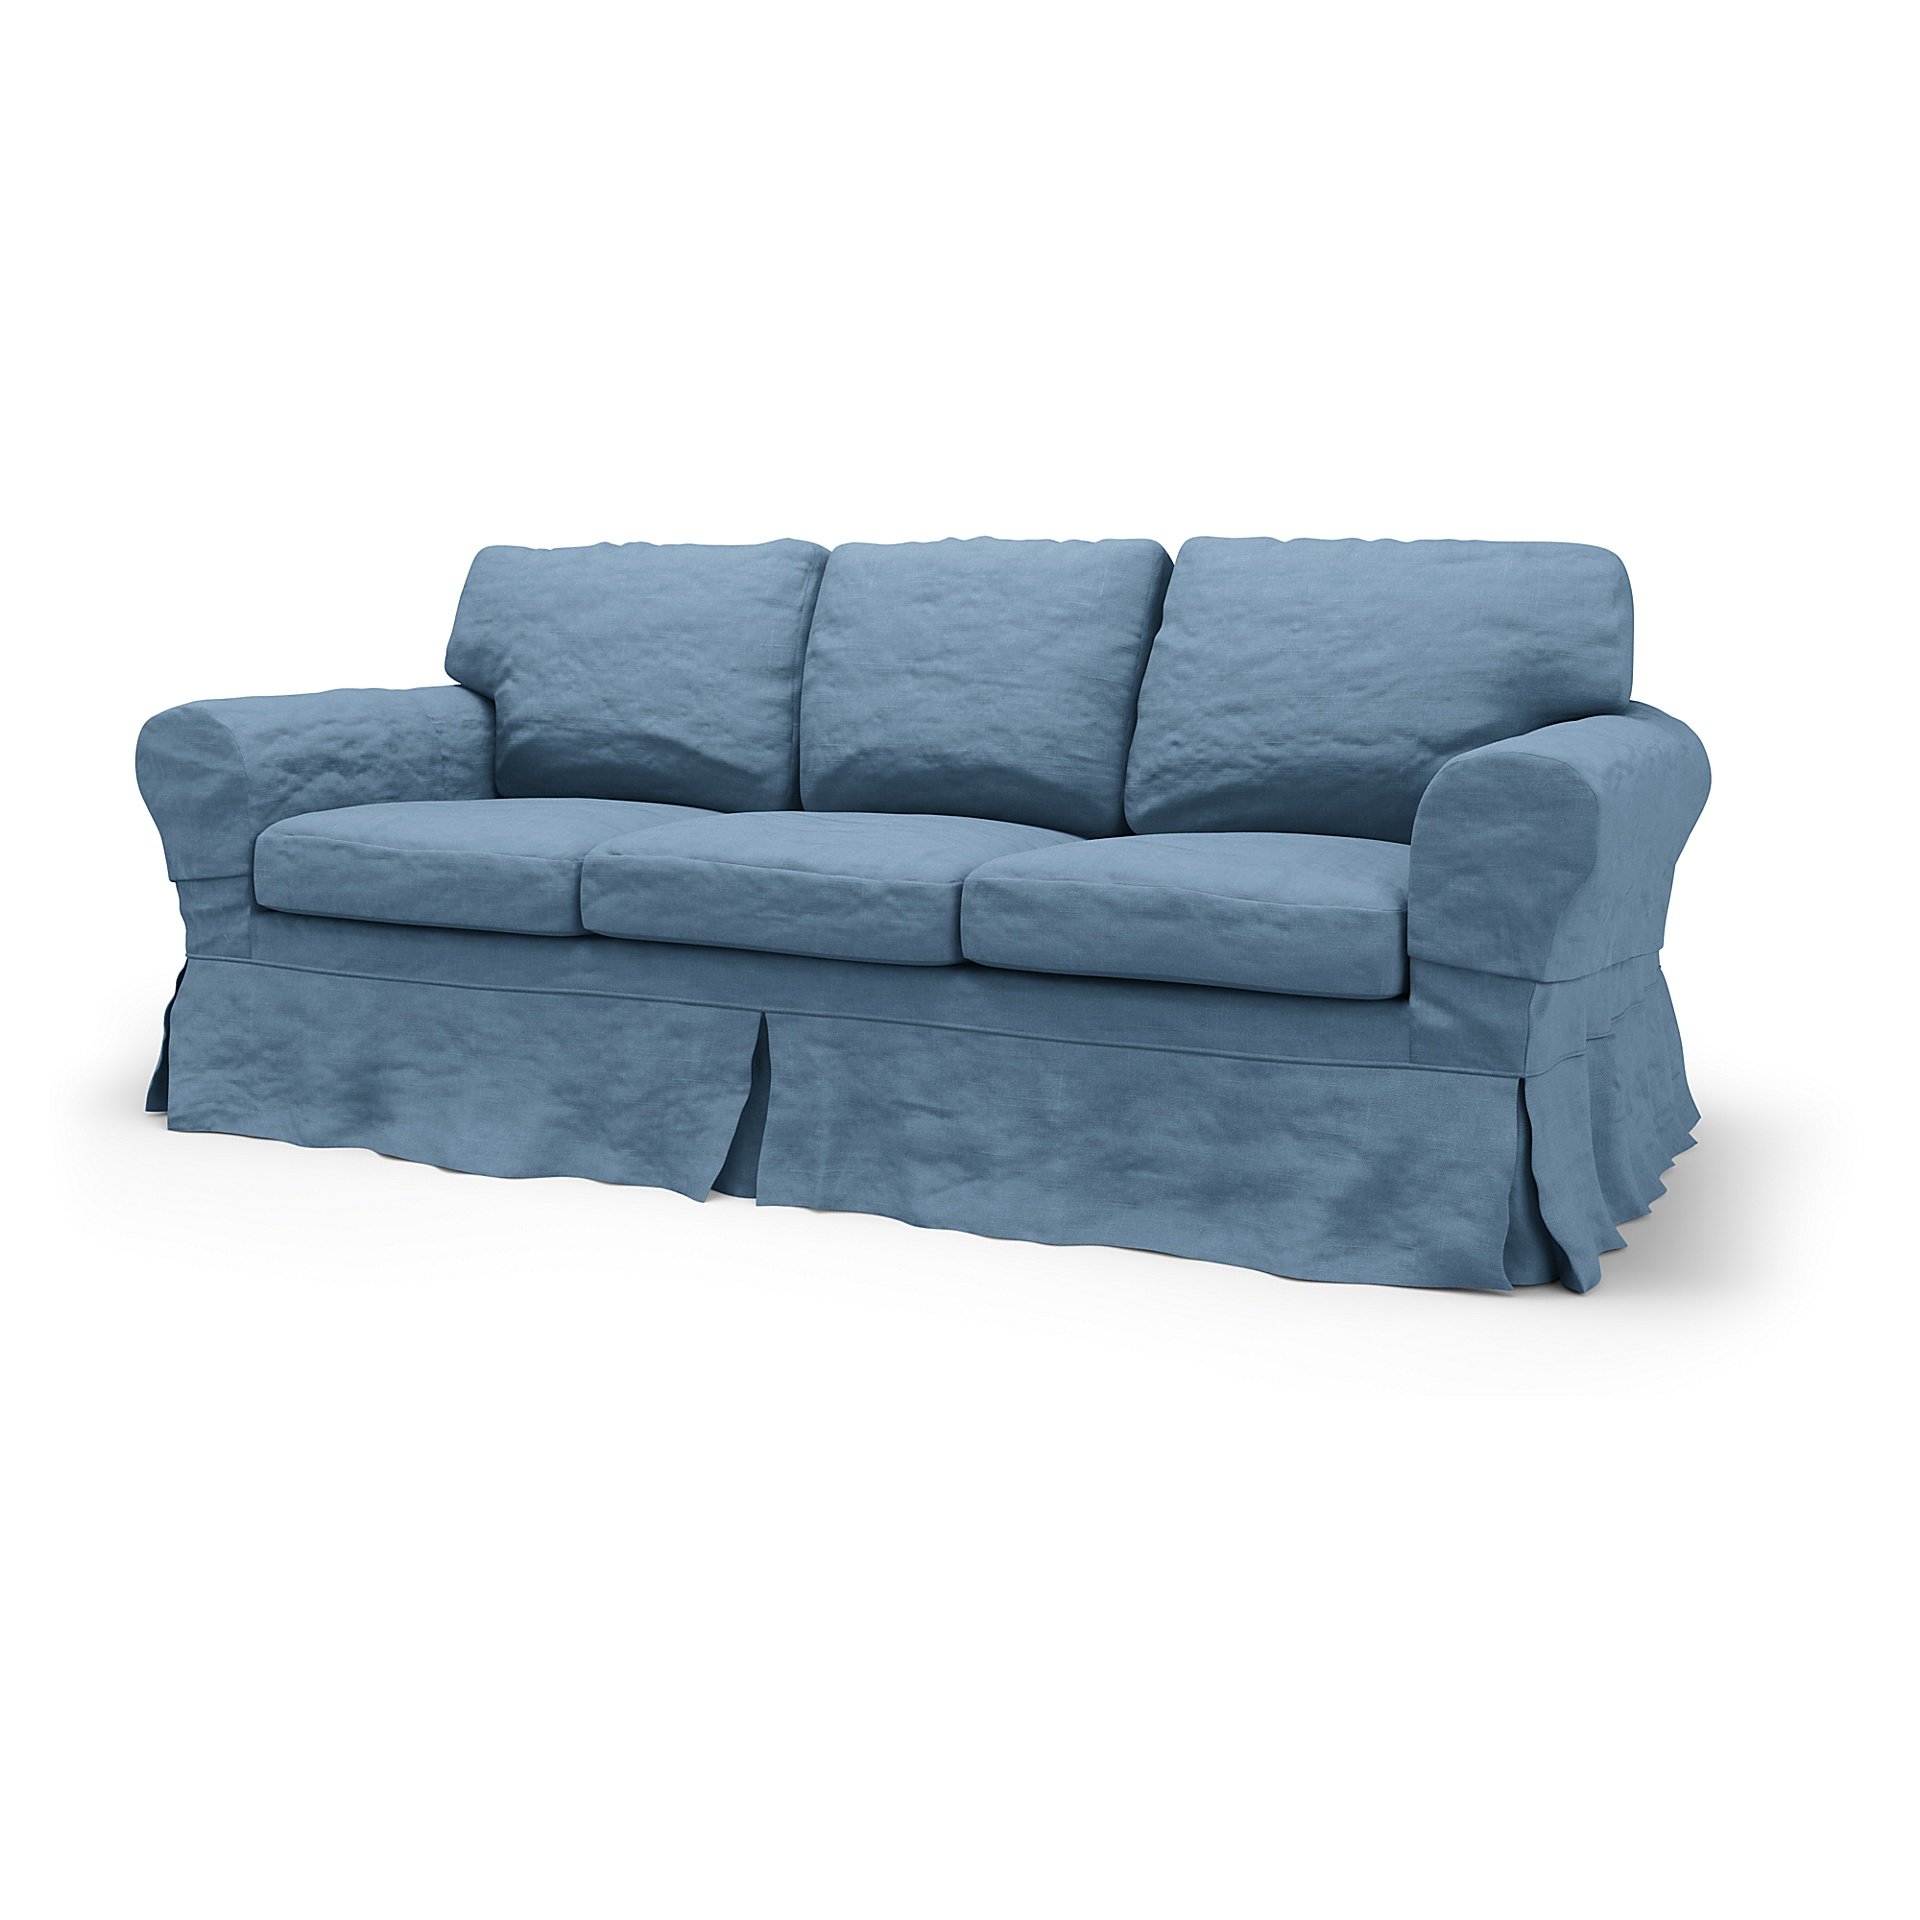 IKEA - Ektorp 3 Seater Sofa Bed Cover, Vintage Blue, Linen - Bemz